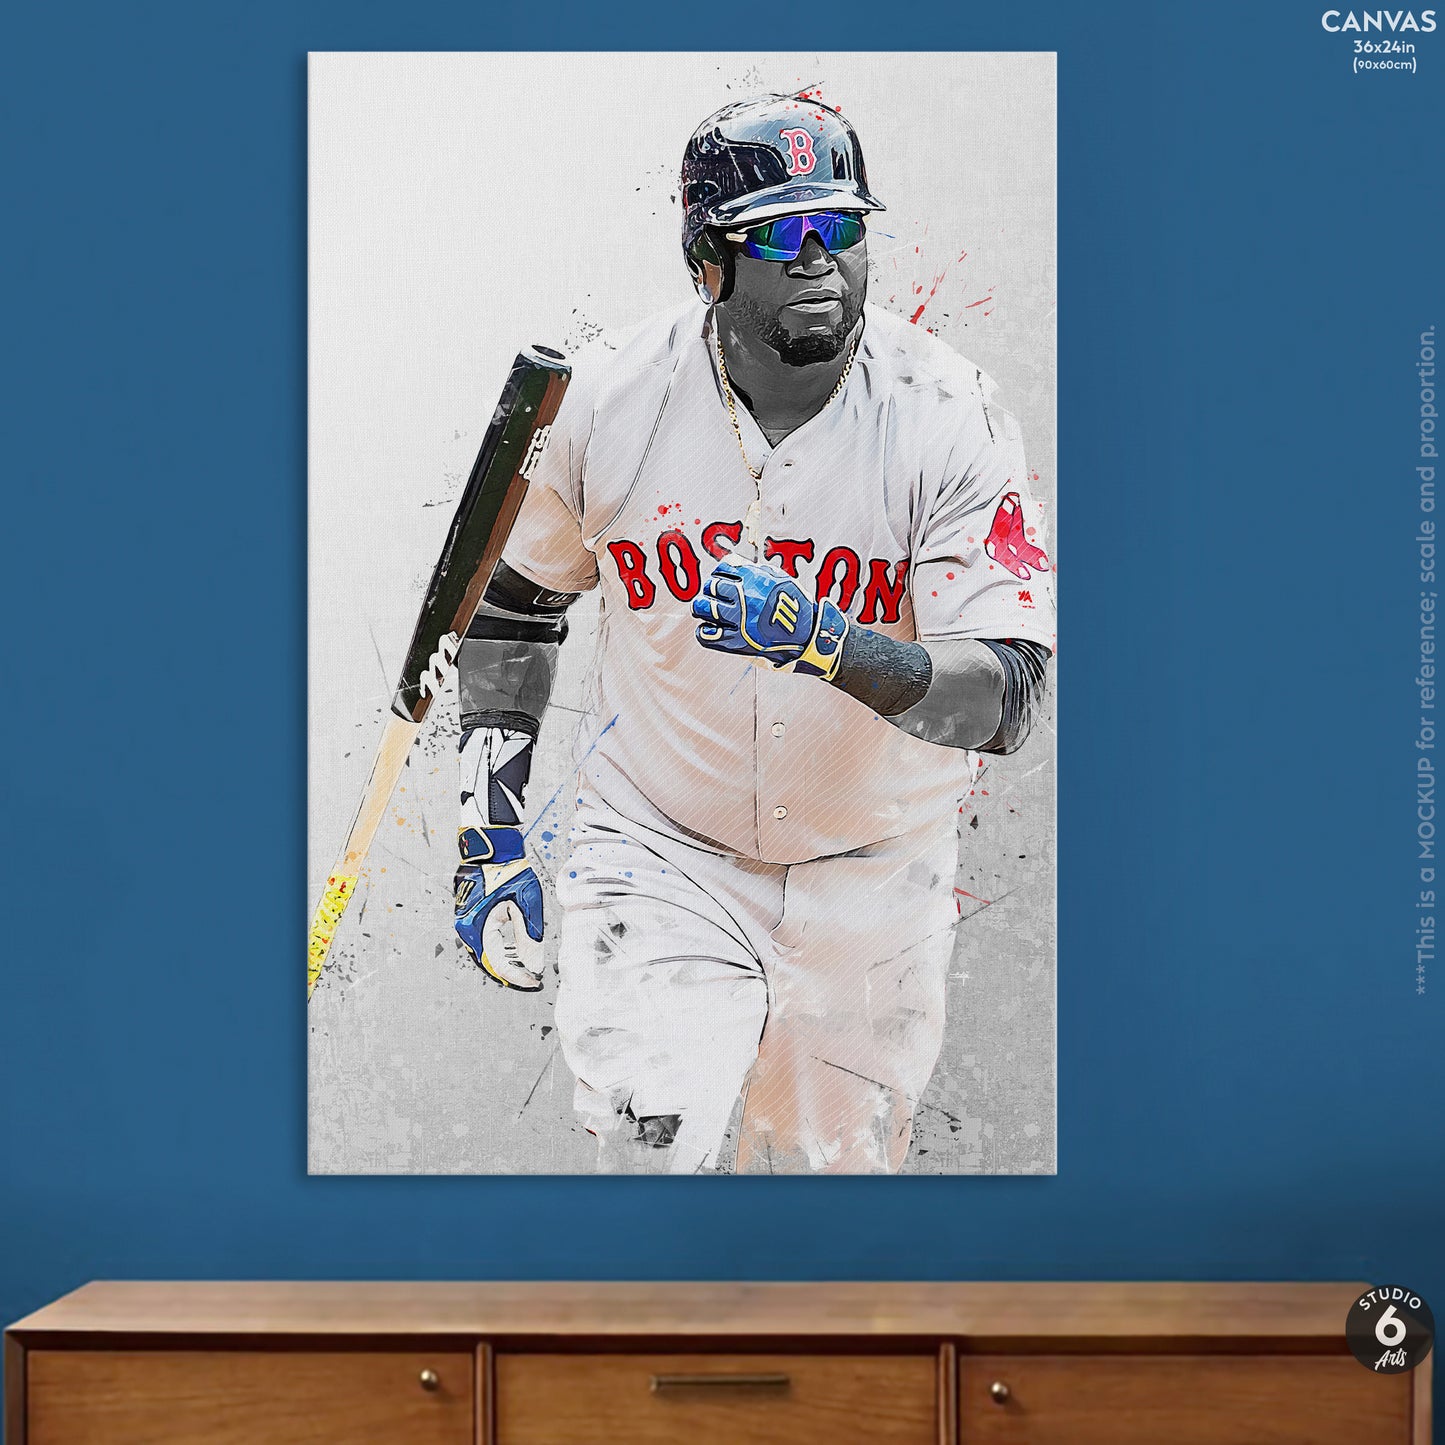 David Ortiz Poster and Canvas, Baseball Print, MLB Wall Decor